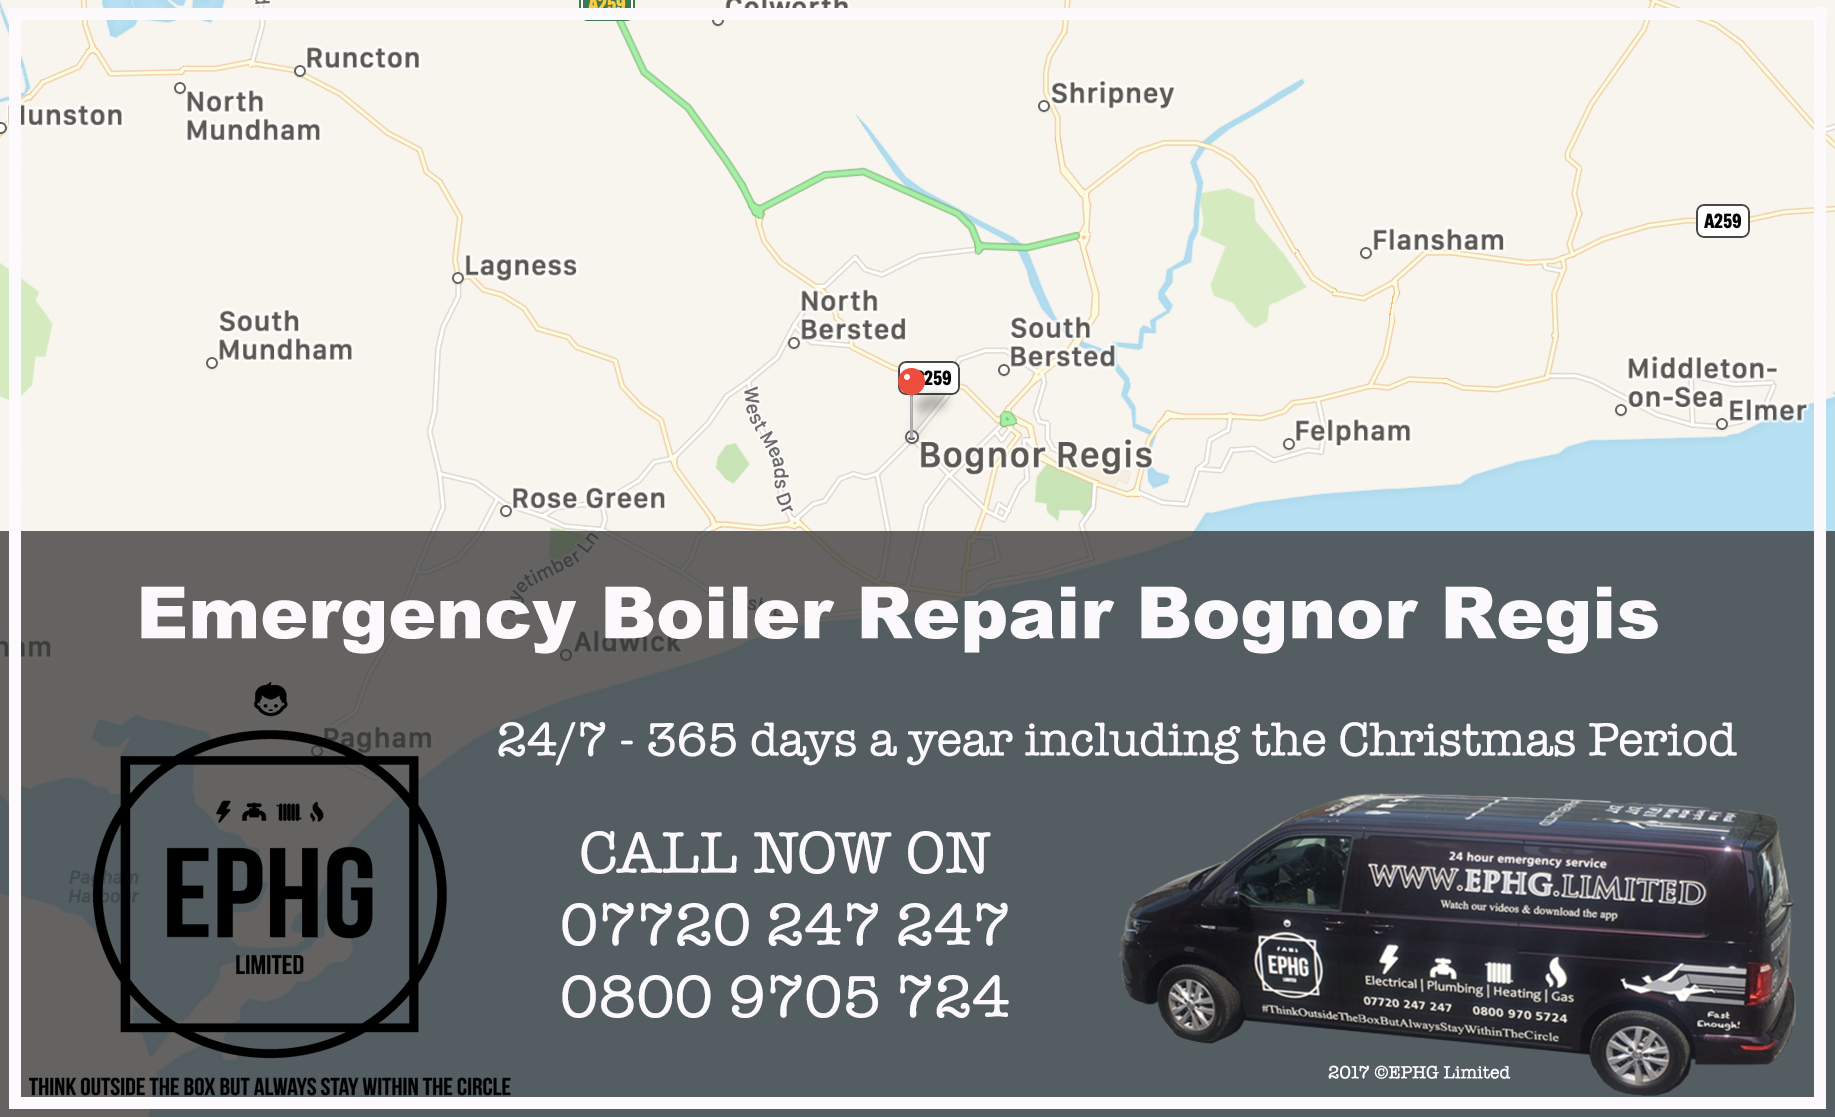 24 Hour Emergency Boiler Repair Bognor Regis